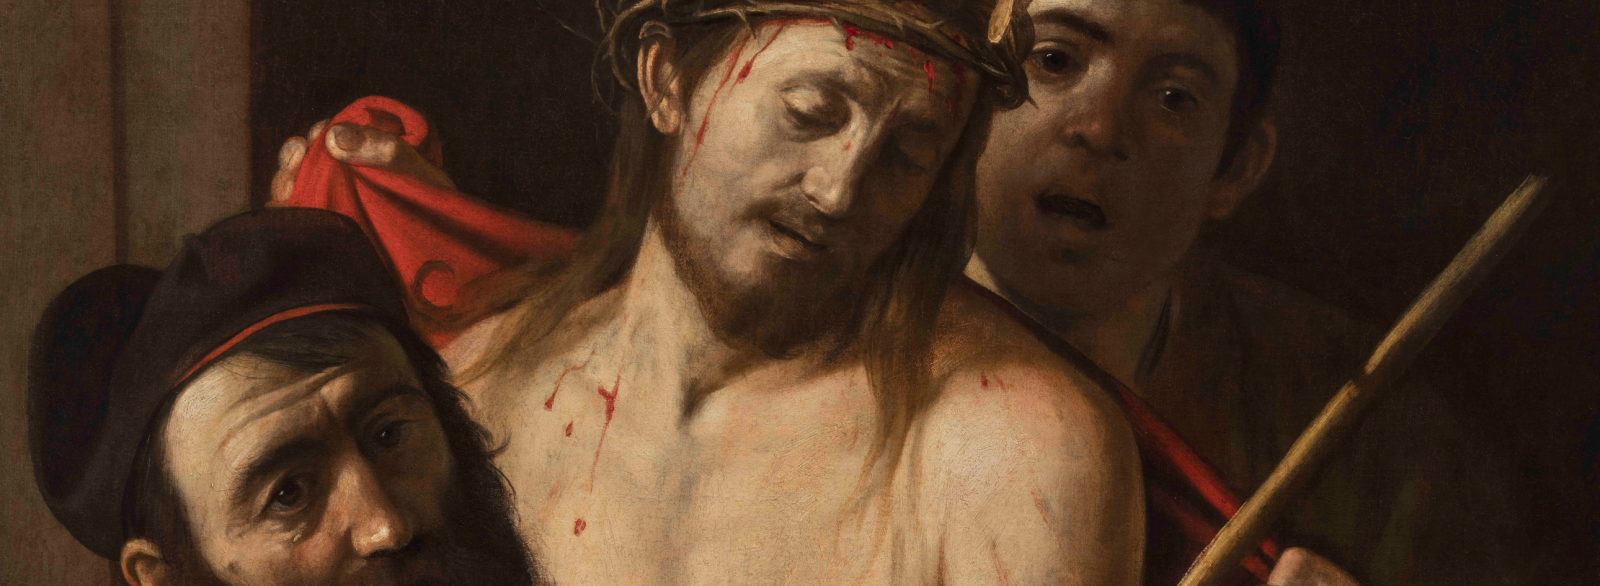 The Lost Caravaggio: Ecce Homo unveiled